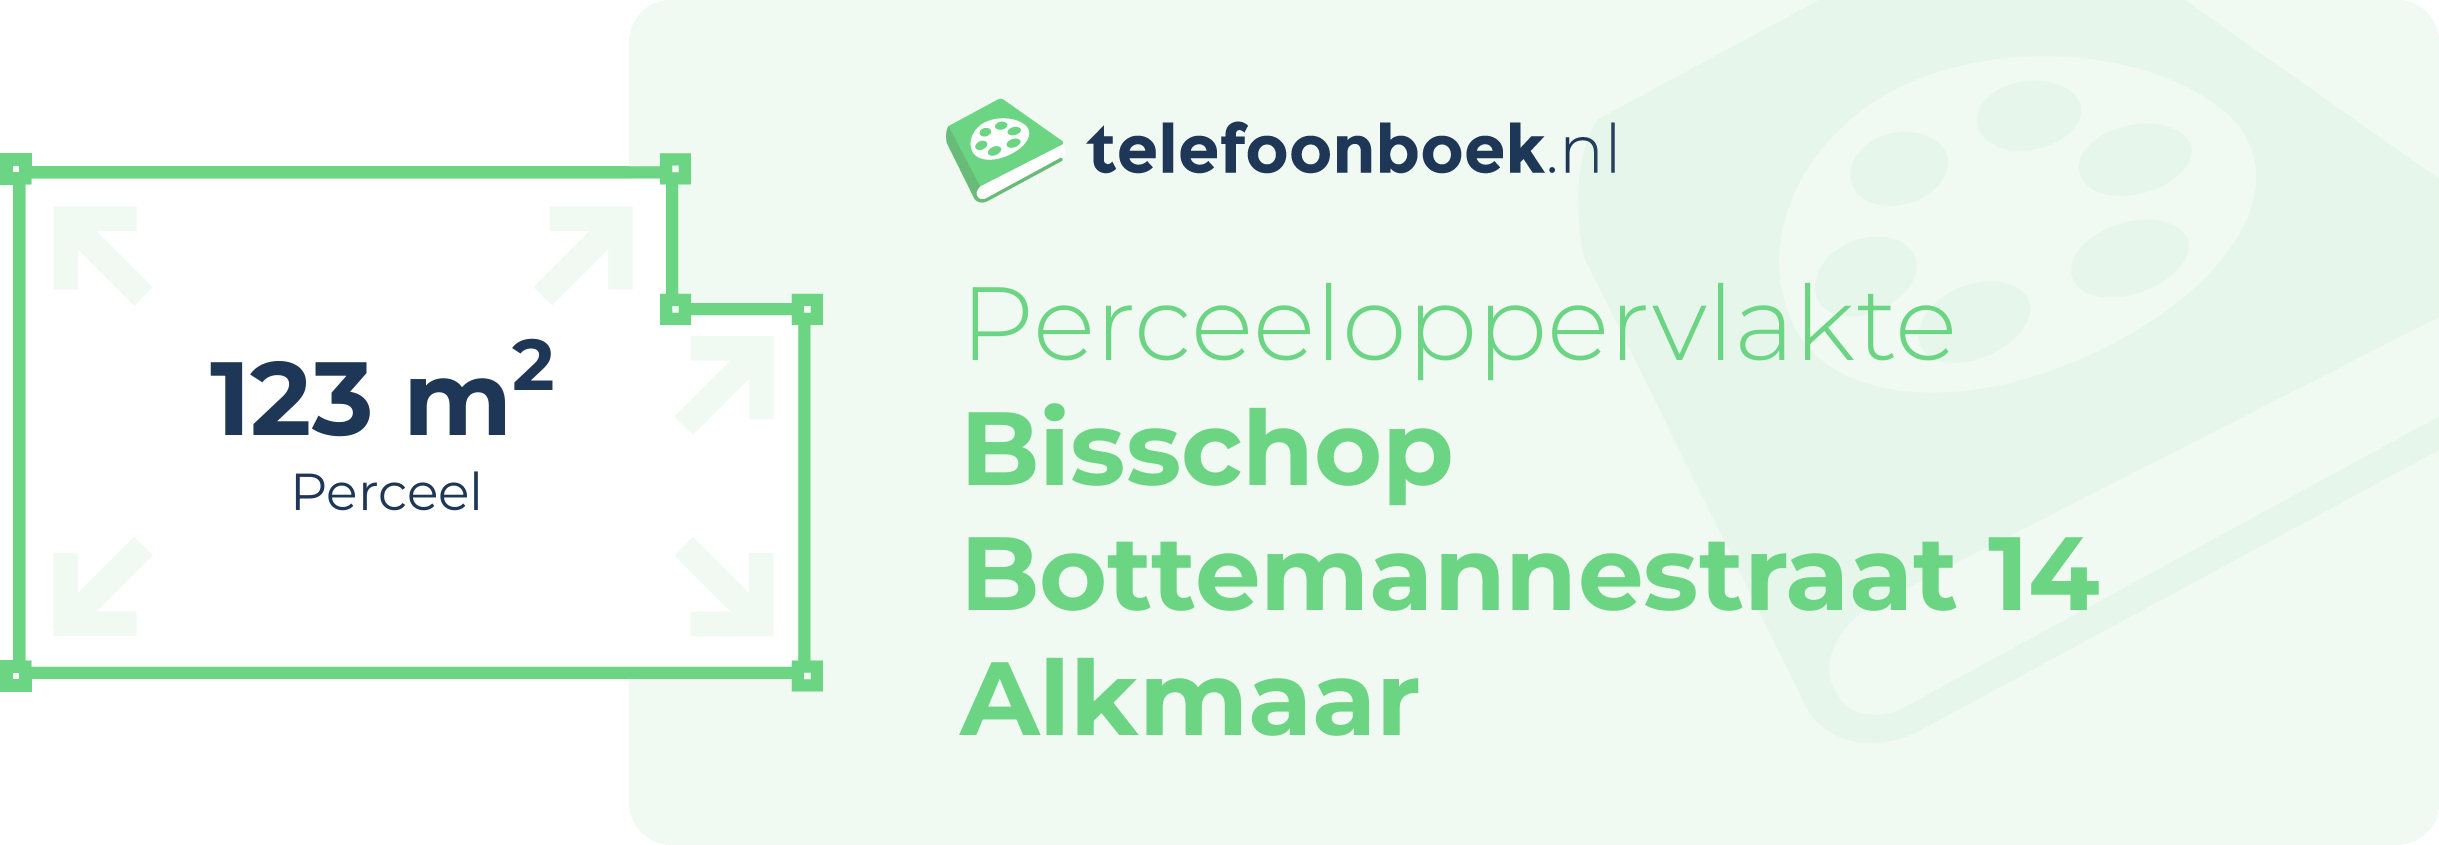 Perceeloppervlakte Bisschop Bottemannestraat 14 Alkmaar